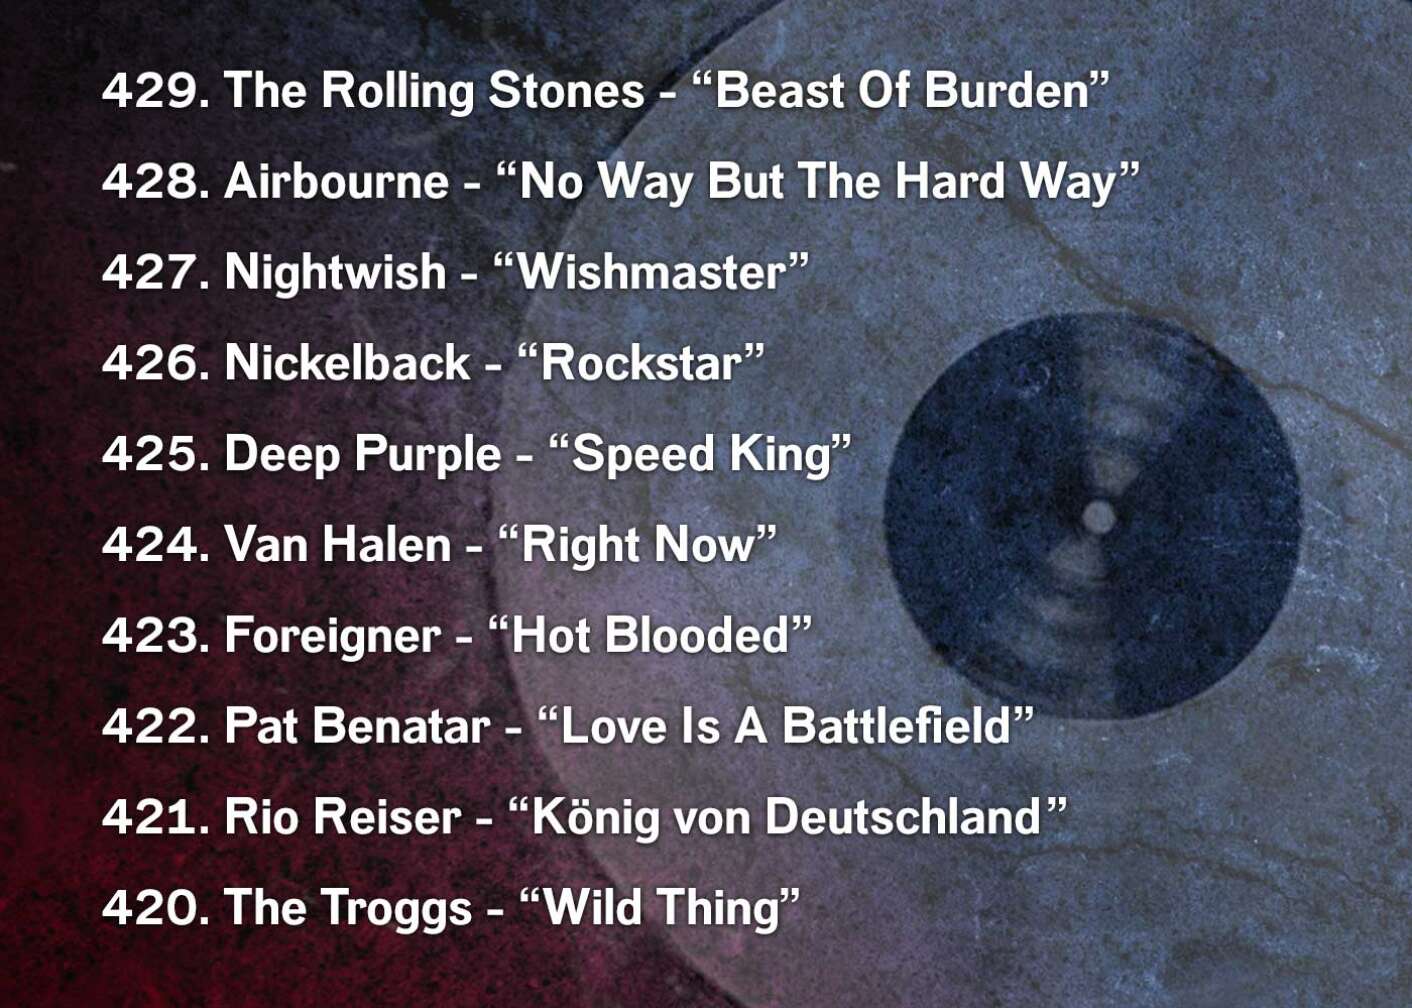 429. The Rolling Stones - “Beast Of Burden” 428. Airbourne - “No Way But The Hard Way	” 427. Nightwish - “Wishmaster” 426. Nickelback - “Rockstar” 425. Deep Purple - “Speed King” 424. Van Halen - “Right Now” 423. Foreigner - “Hot Blooded” 422. Pat Benatar - “Love Is A Battlefield”	 421. Rio Reiser - “König von Deutschland	” 420. The Troggs - “Wild Thing”